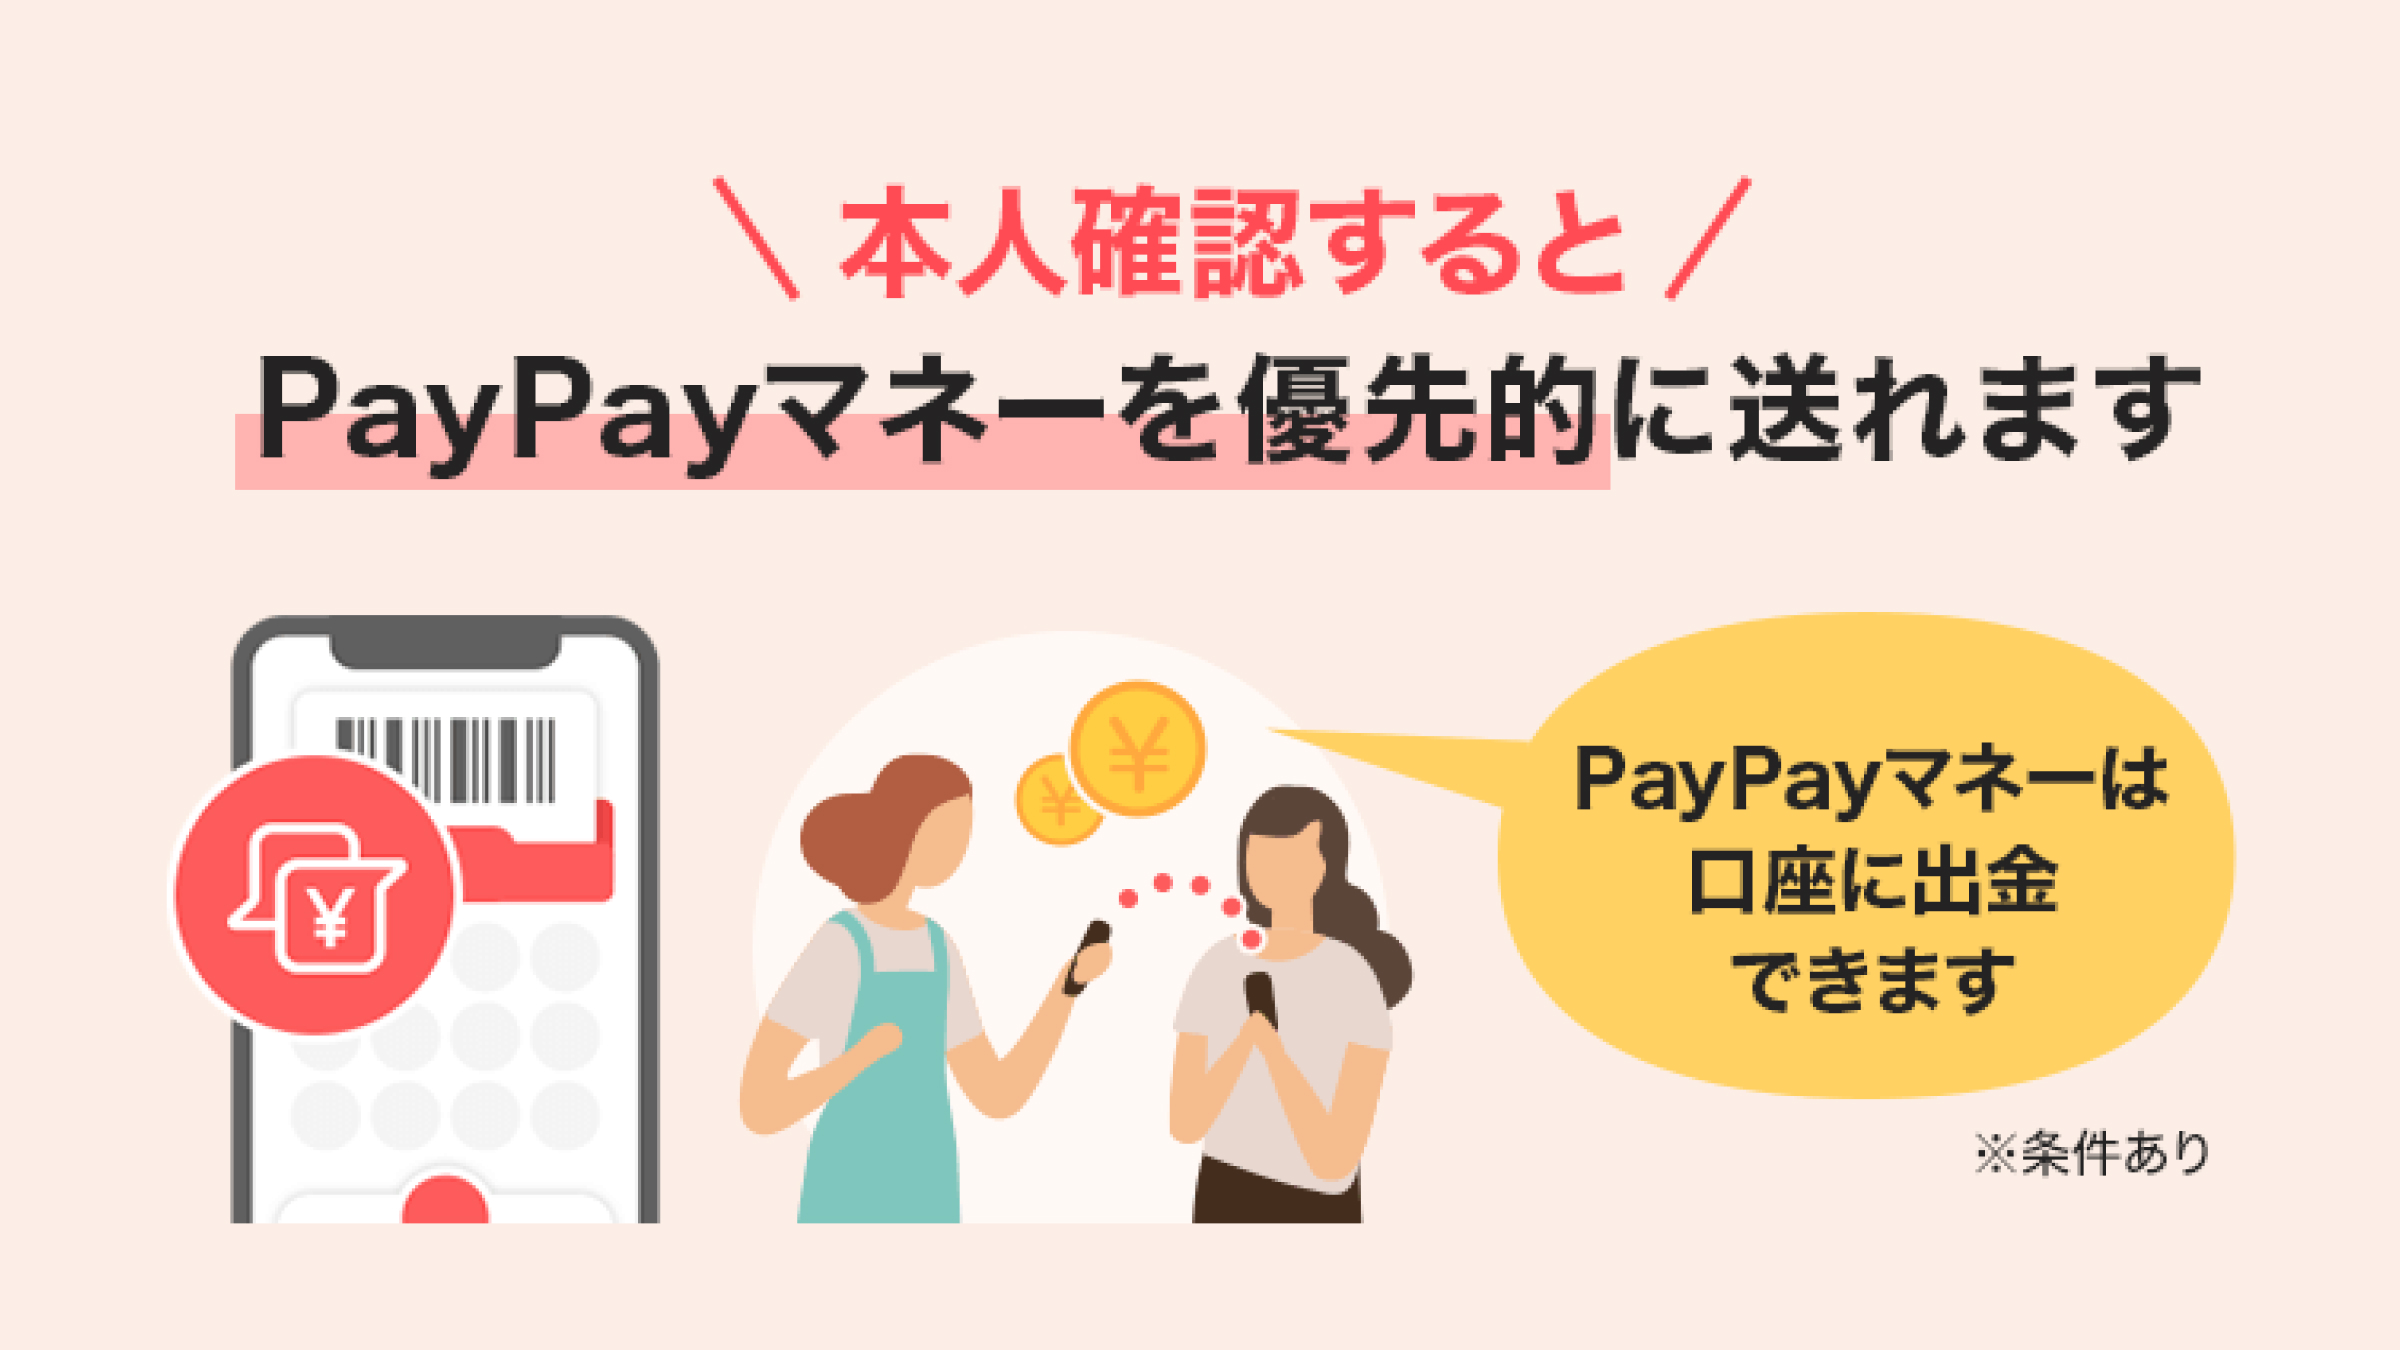 送金時に、PayPayマネーを優先的に送れるように | PayPay株式会社